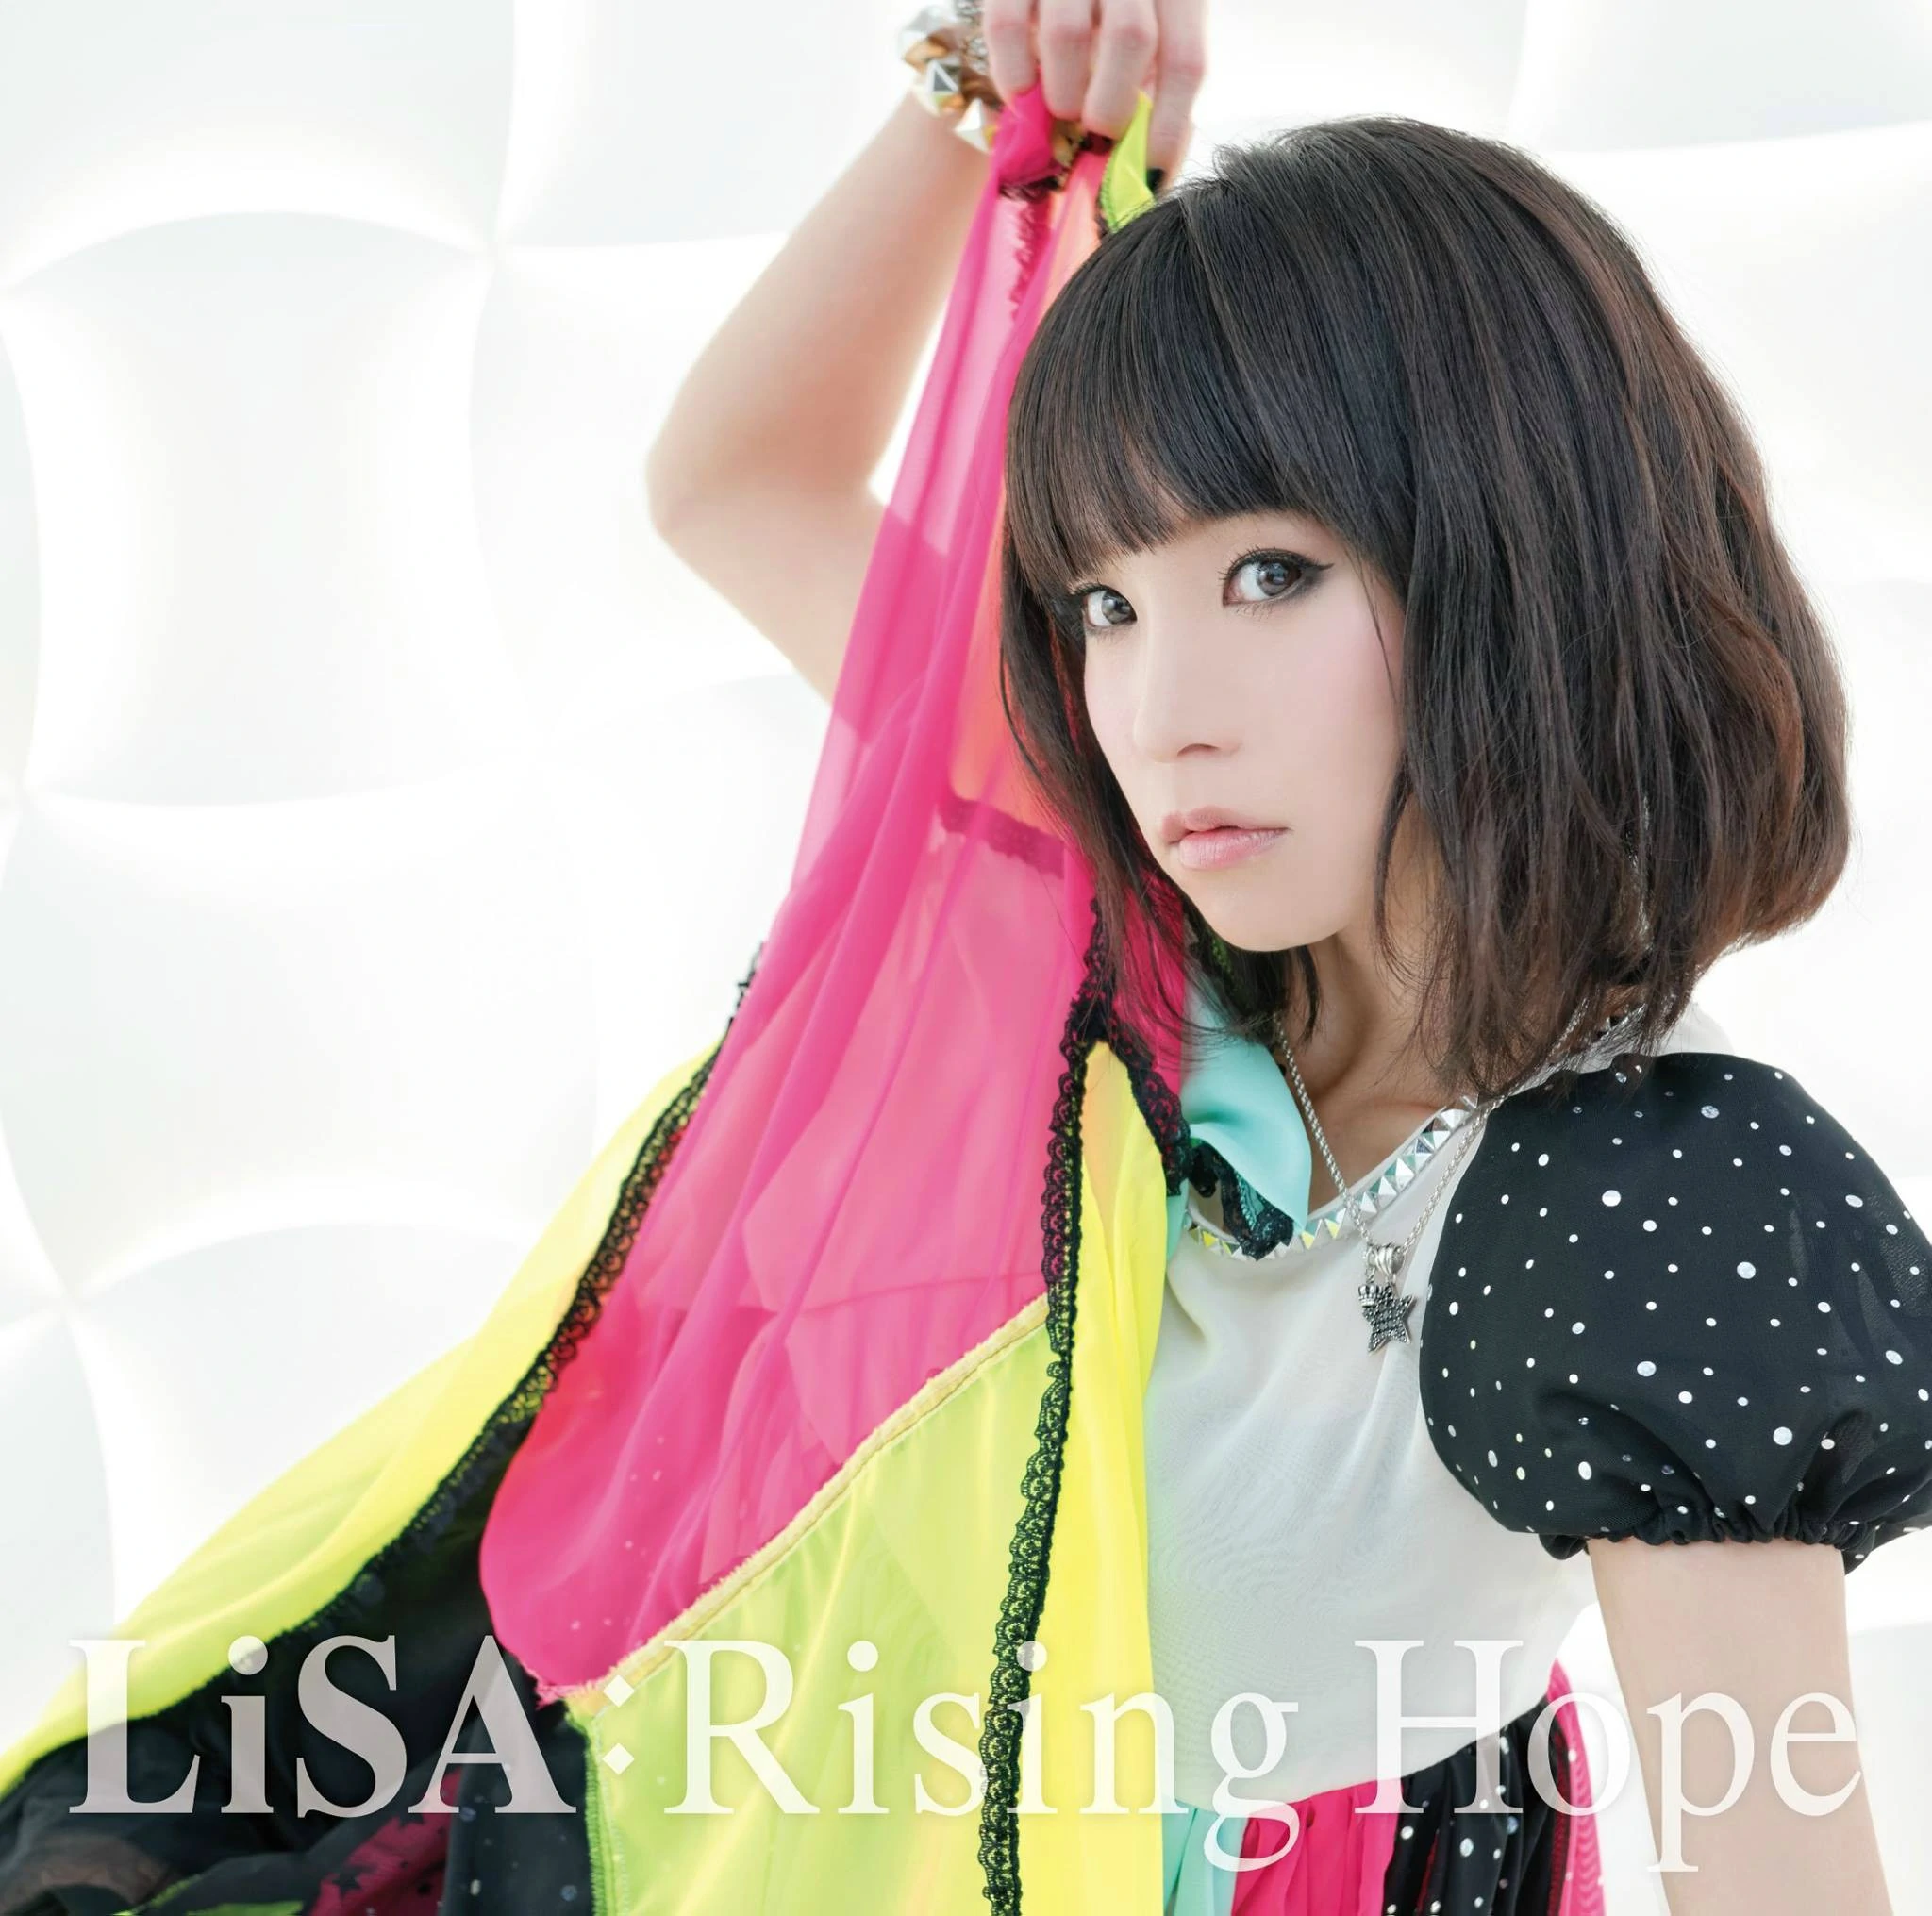 LiSA Rising Hope cover artwork